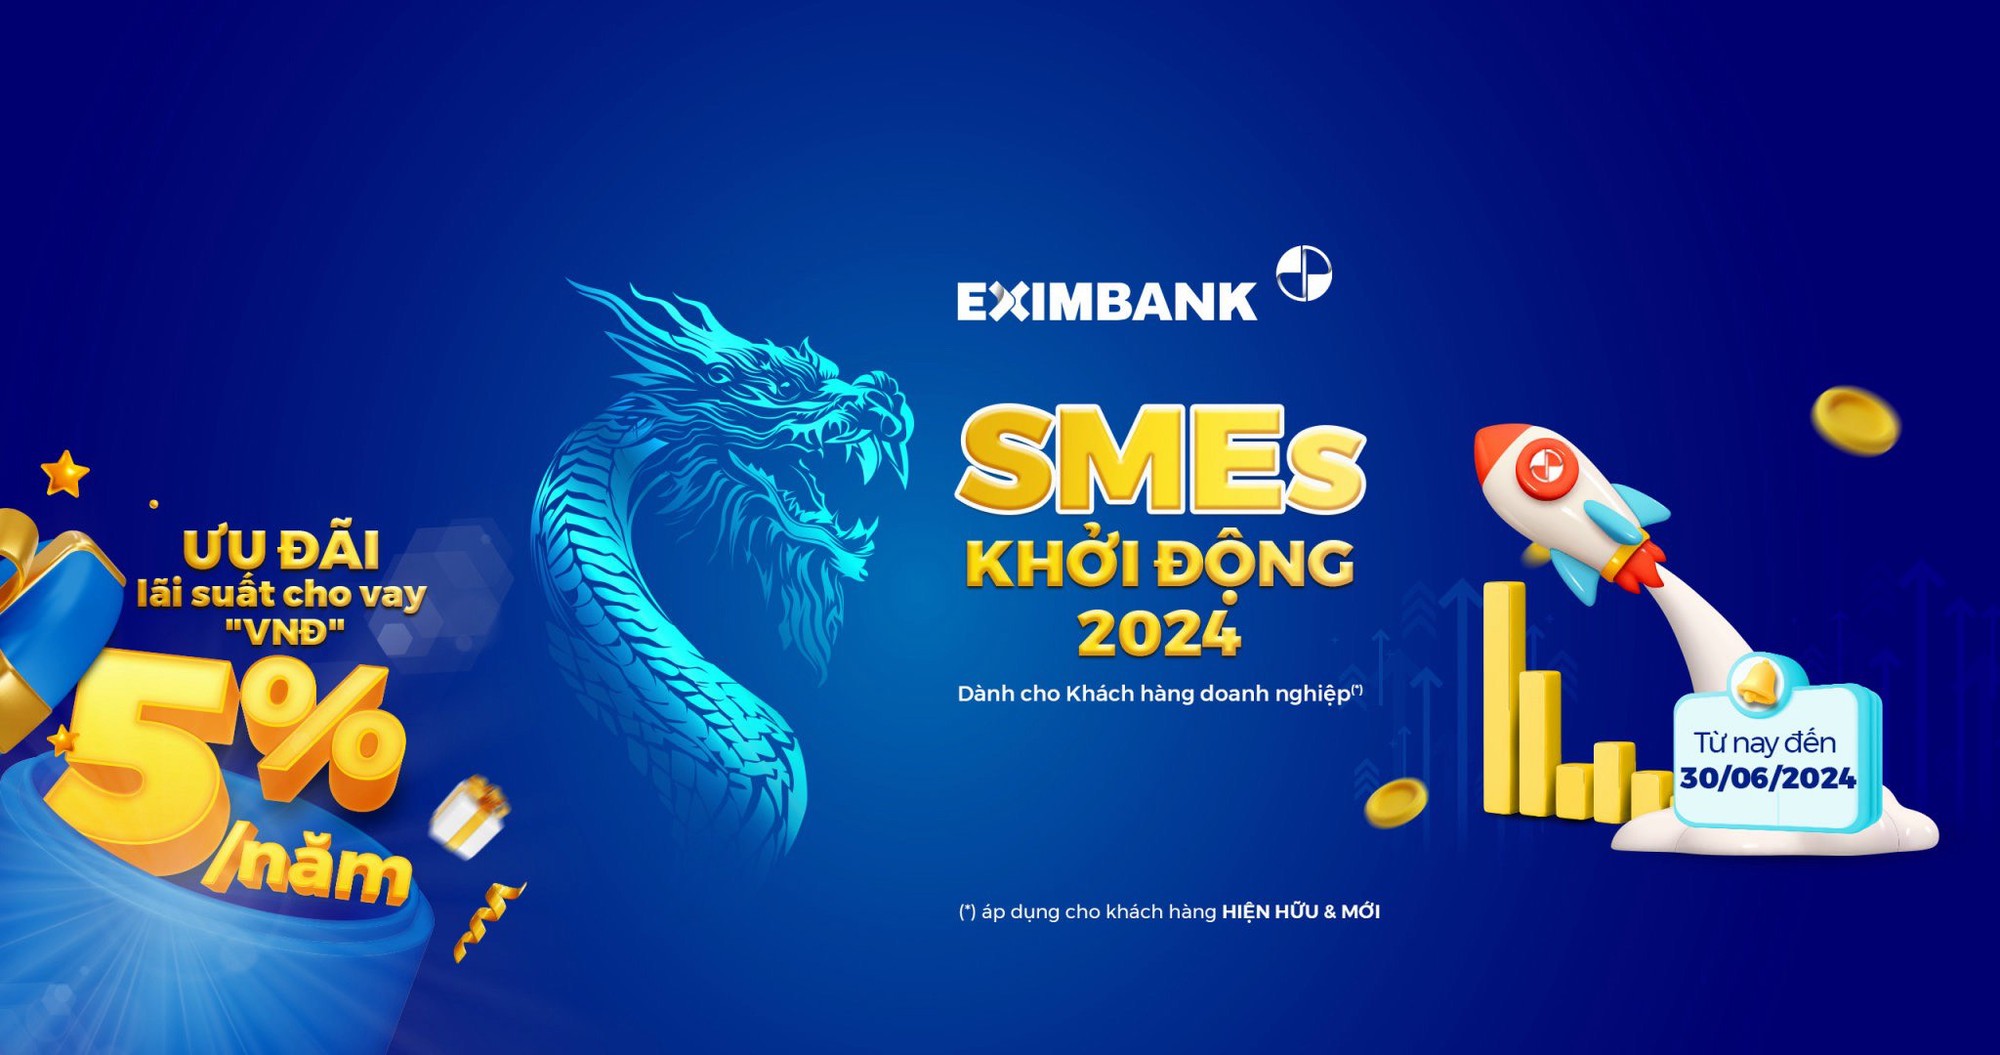 Eximbank tung chương trình cho vay ưu đãi “SMEs – Khởi động 2024”- Ảnh 1.